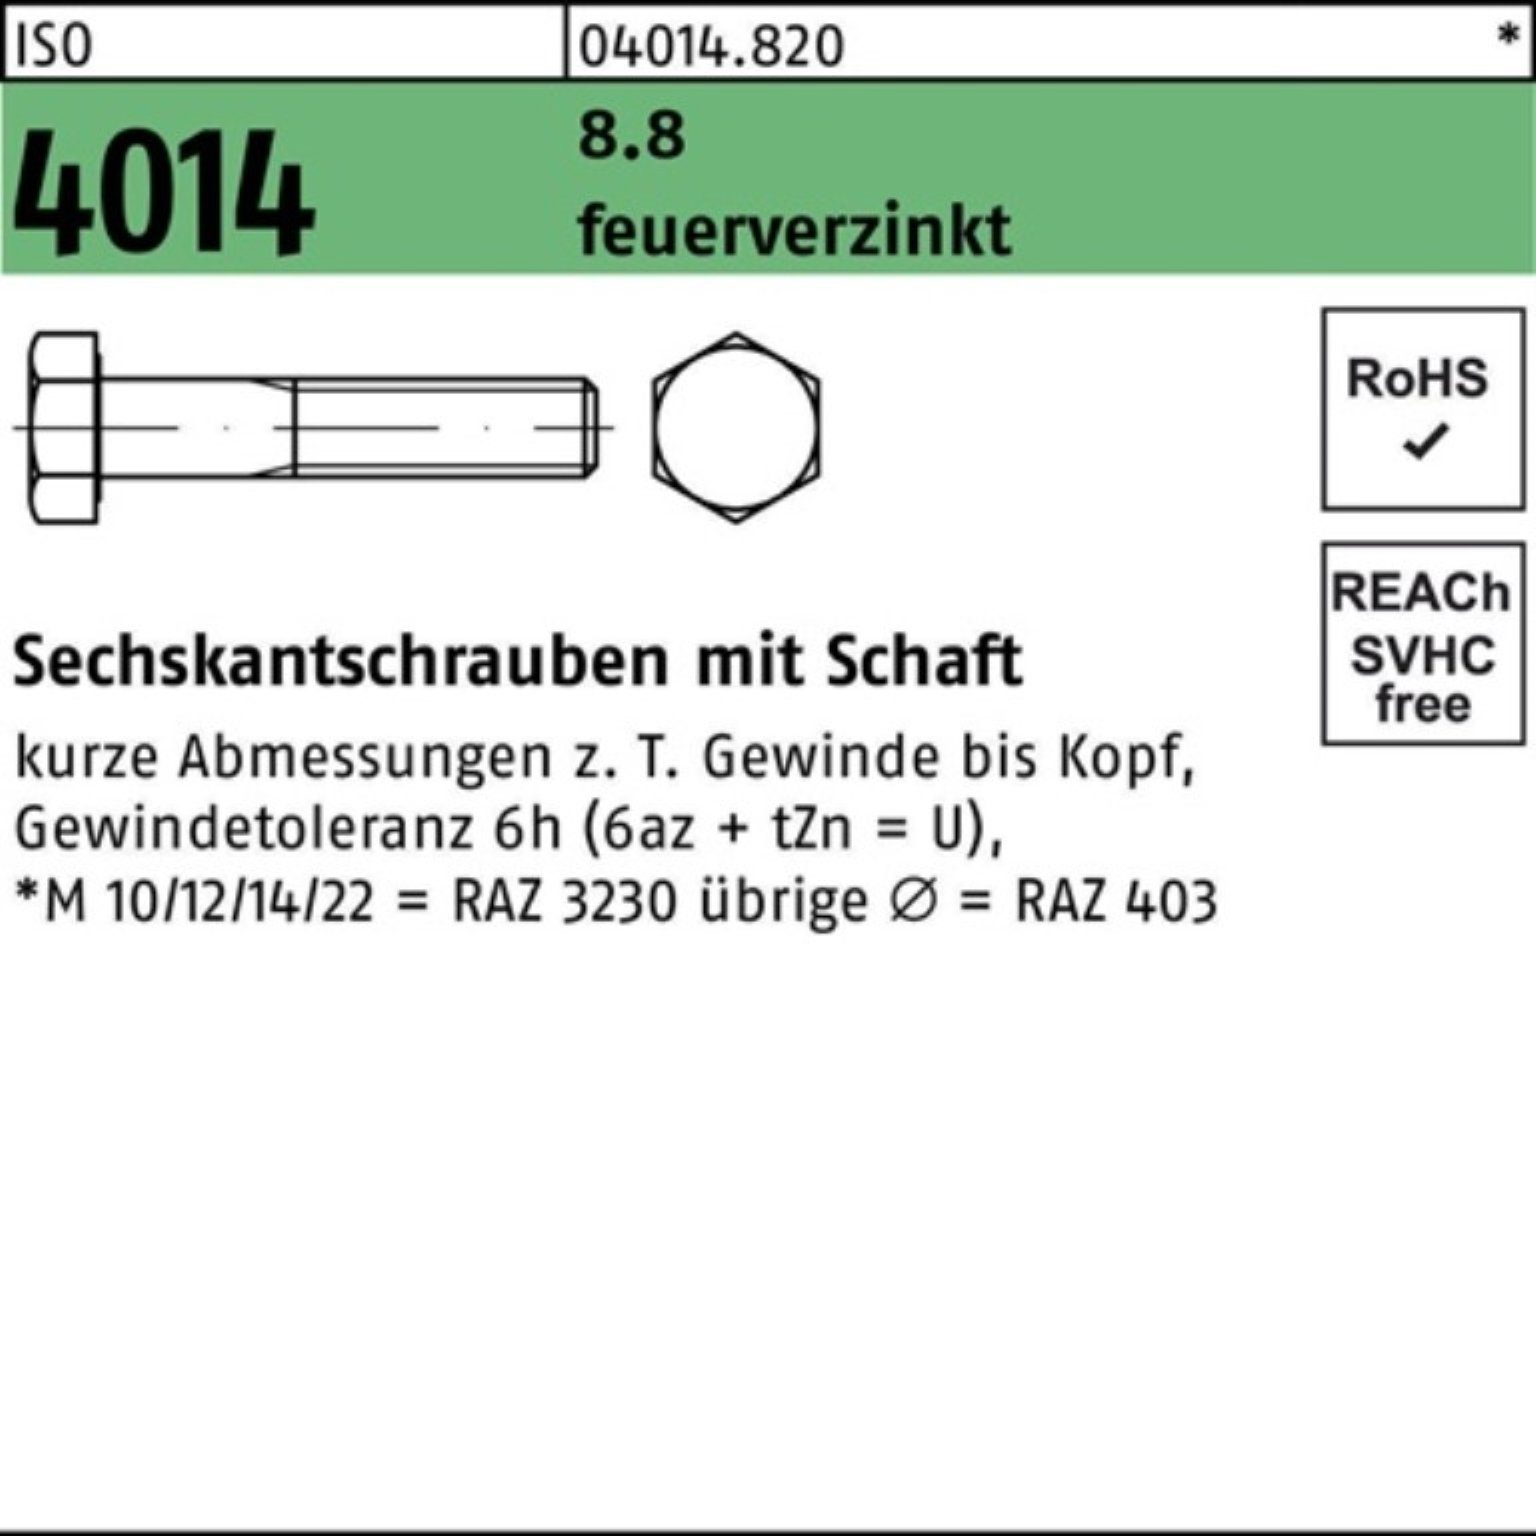 Schaft Pack ISO 1 8.8 feuerverz. 100er Bufab M20x 4014 Sechskantschraube Sechskantschraube 160